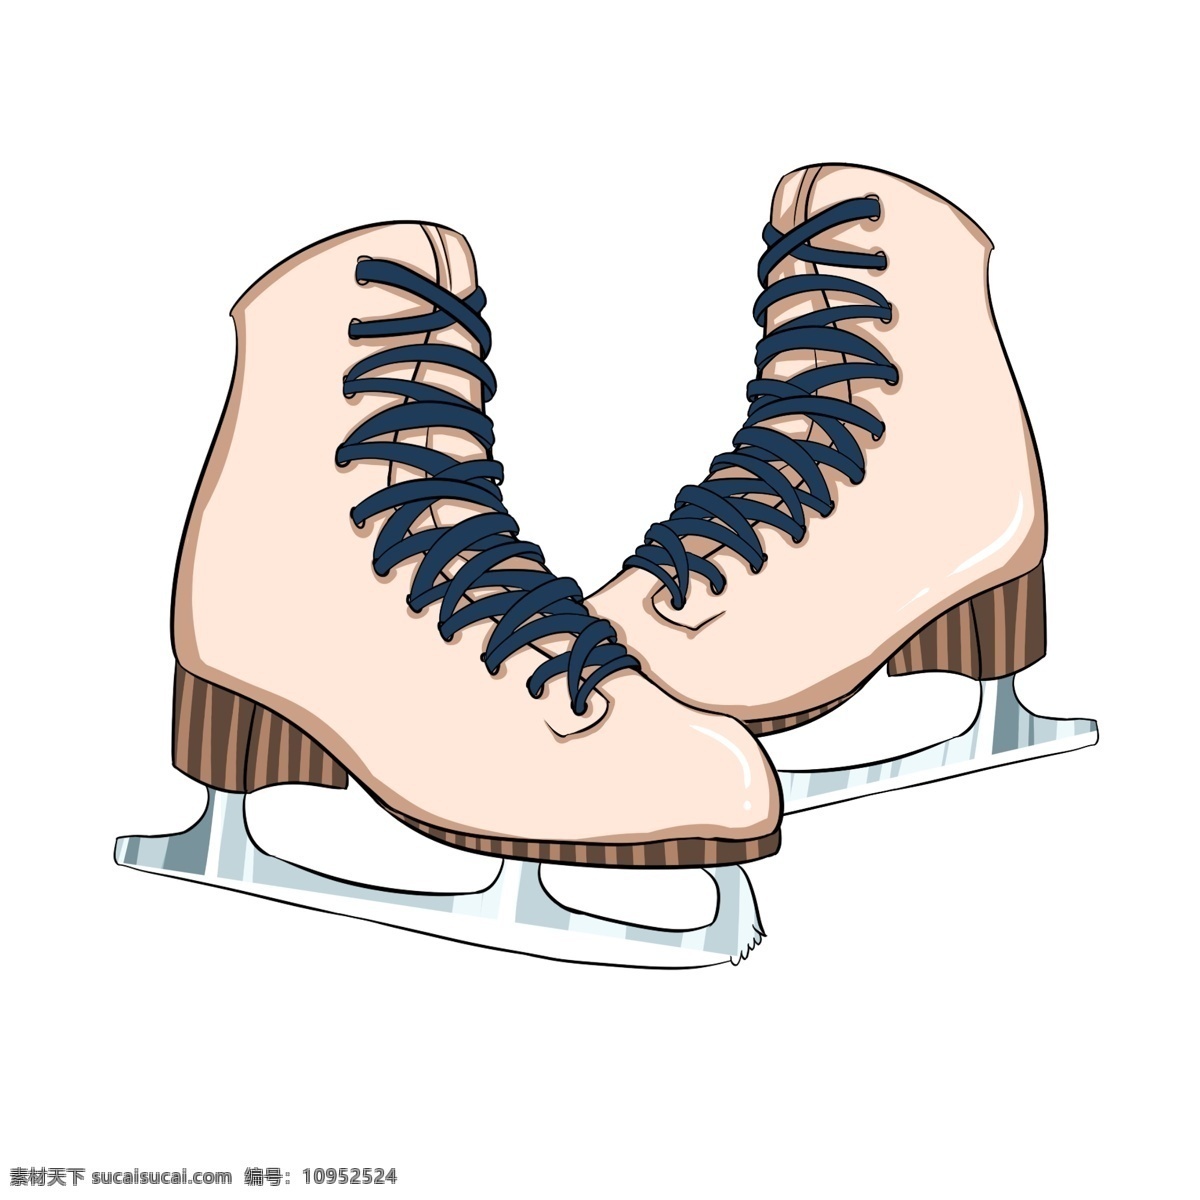 女孩 淡 粉色 冰刀 滑冰 鞋 滑冰鞋 溜冰鞋 淡粉色 冰刀滑冰鞋 冬天 冬季滑冰鞋 手绘滑冰鞋 卡通溜冰鞋 插画